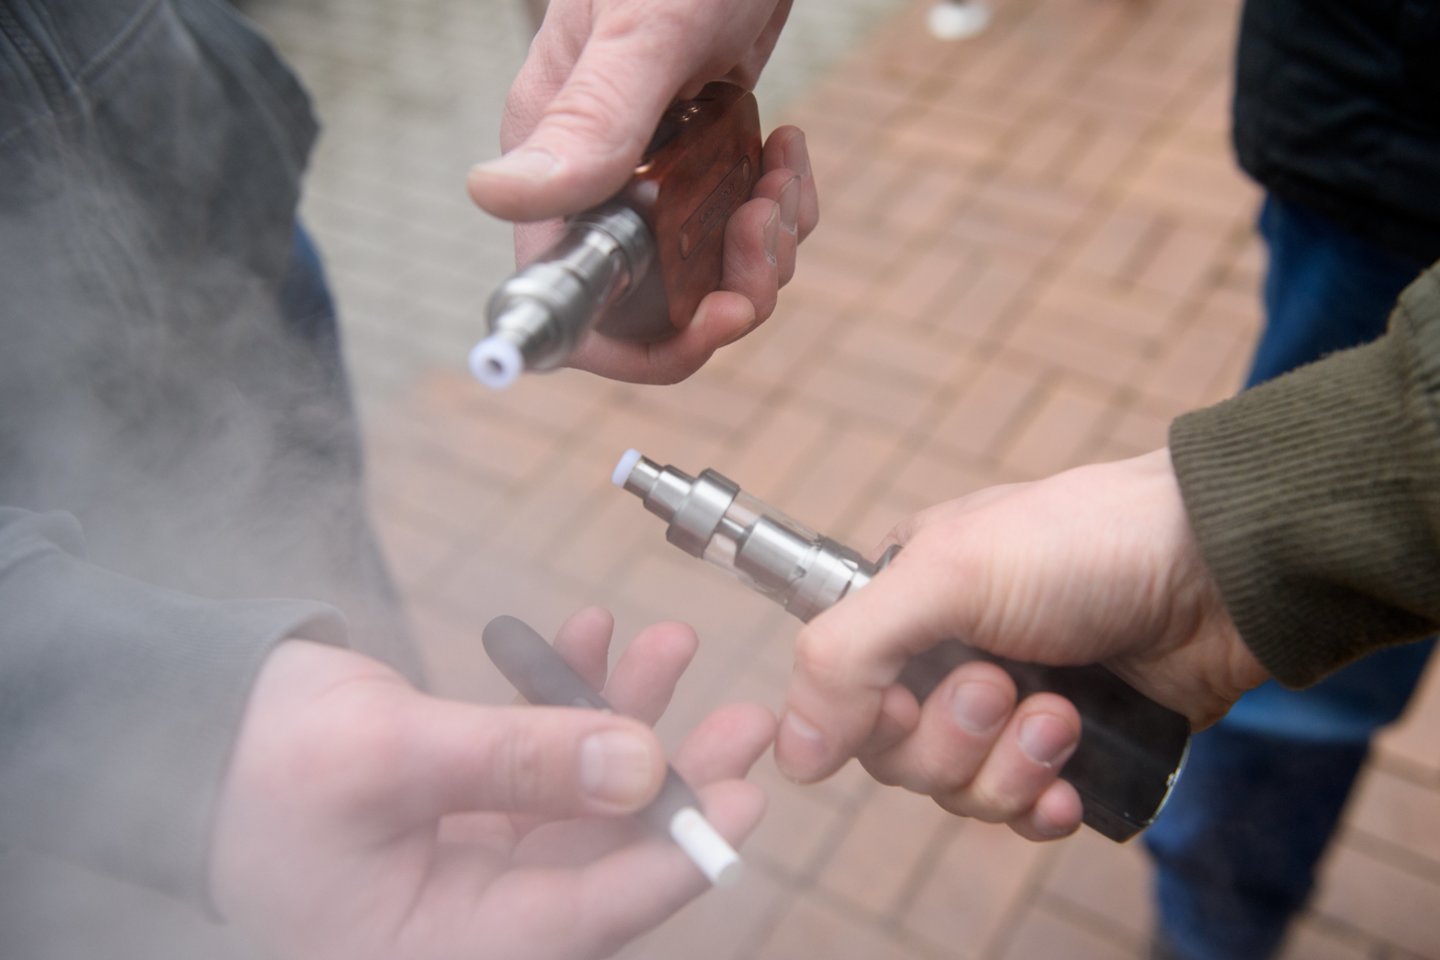 Cigaretė, cigaretės, nuorūkos, rūkymas žudo, plaučių vėžys<br>D.Umbraso nuotr.